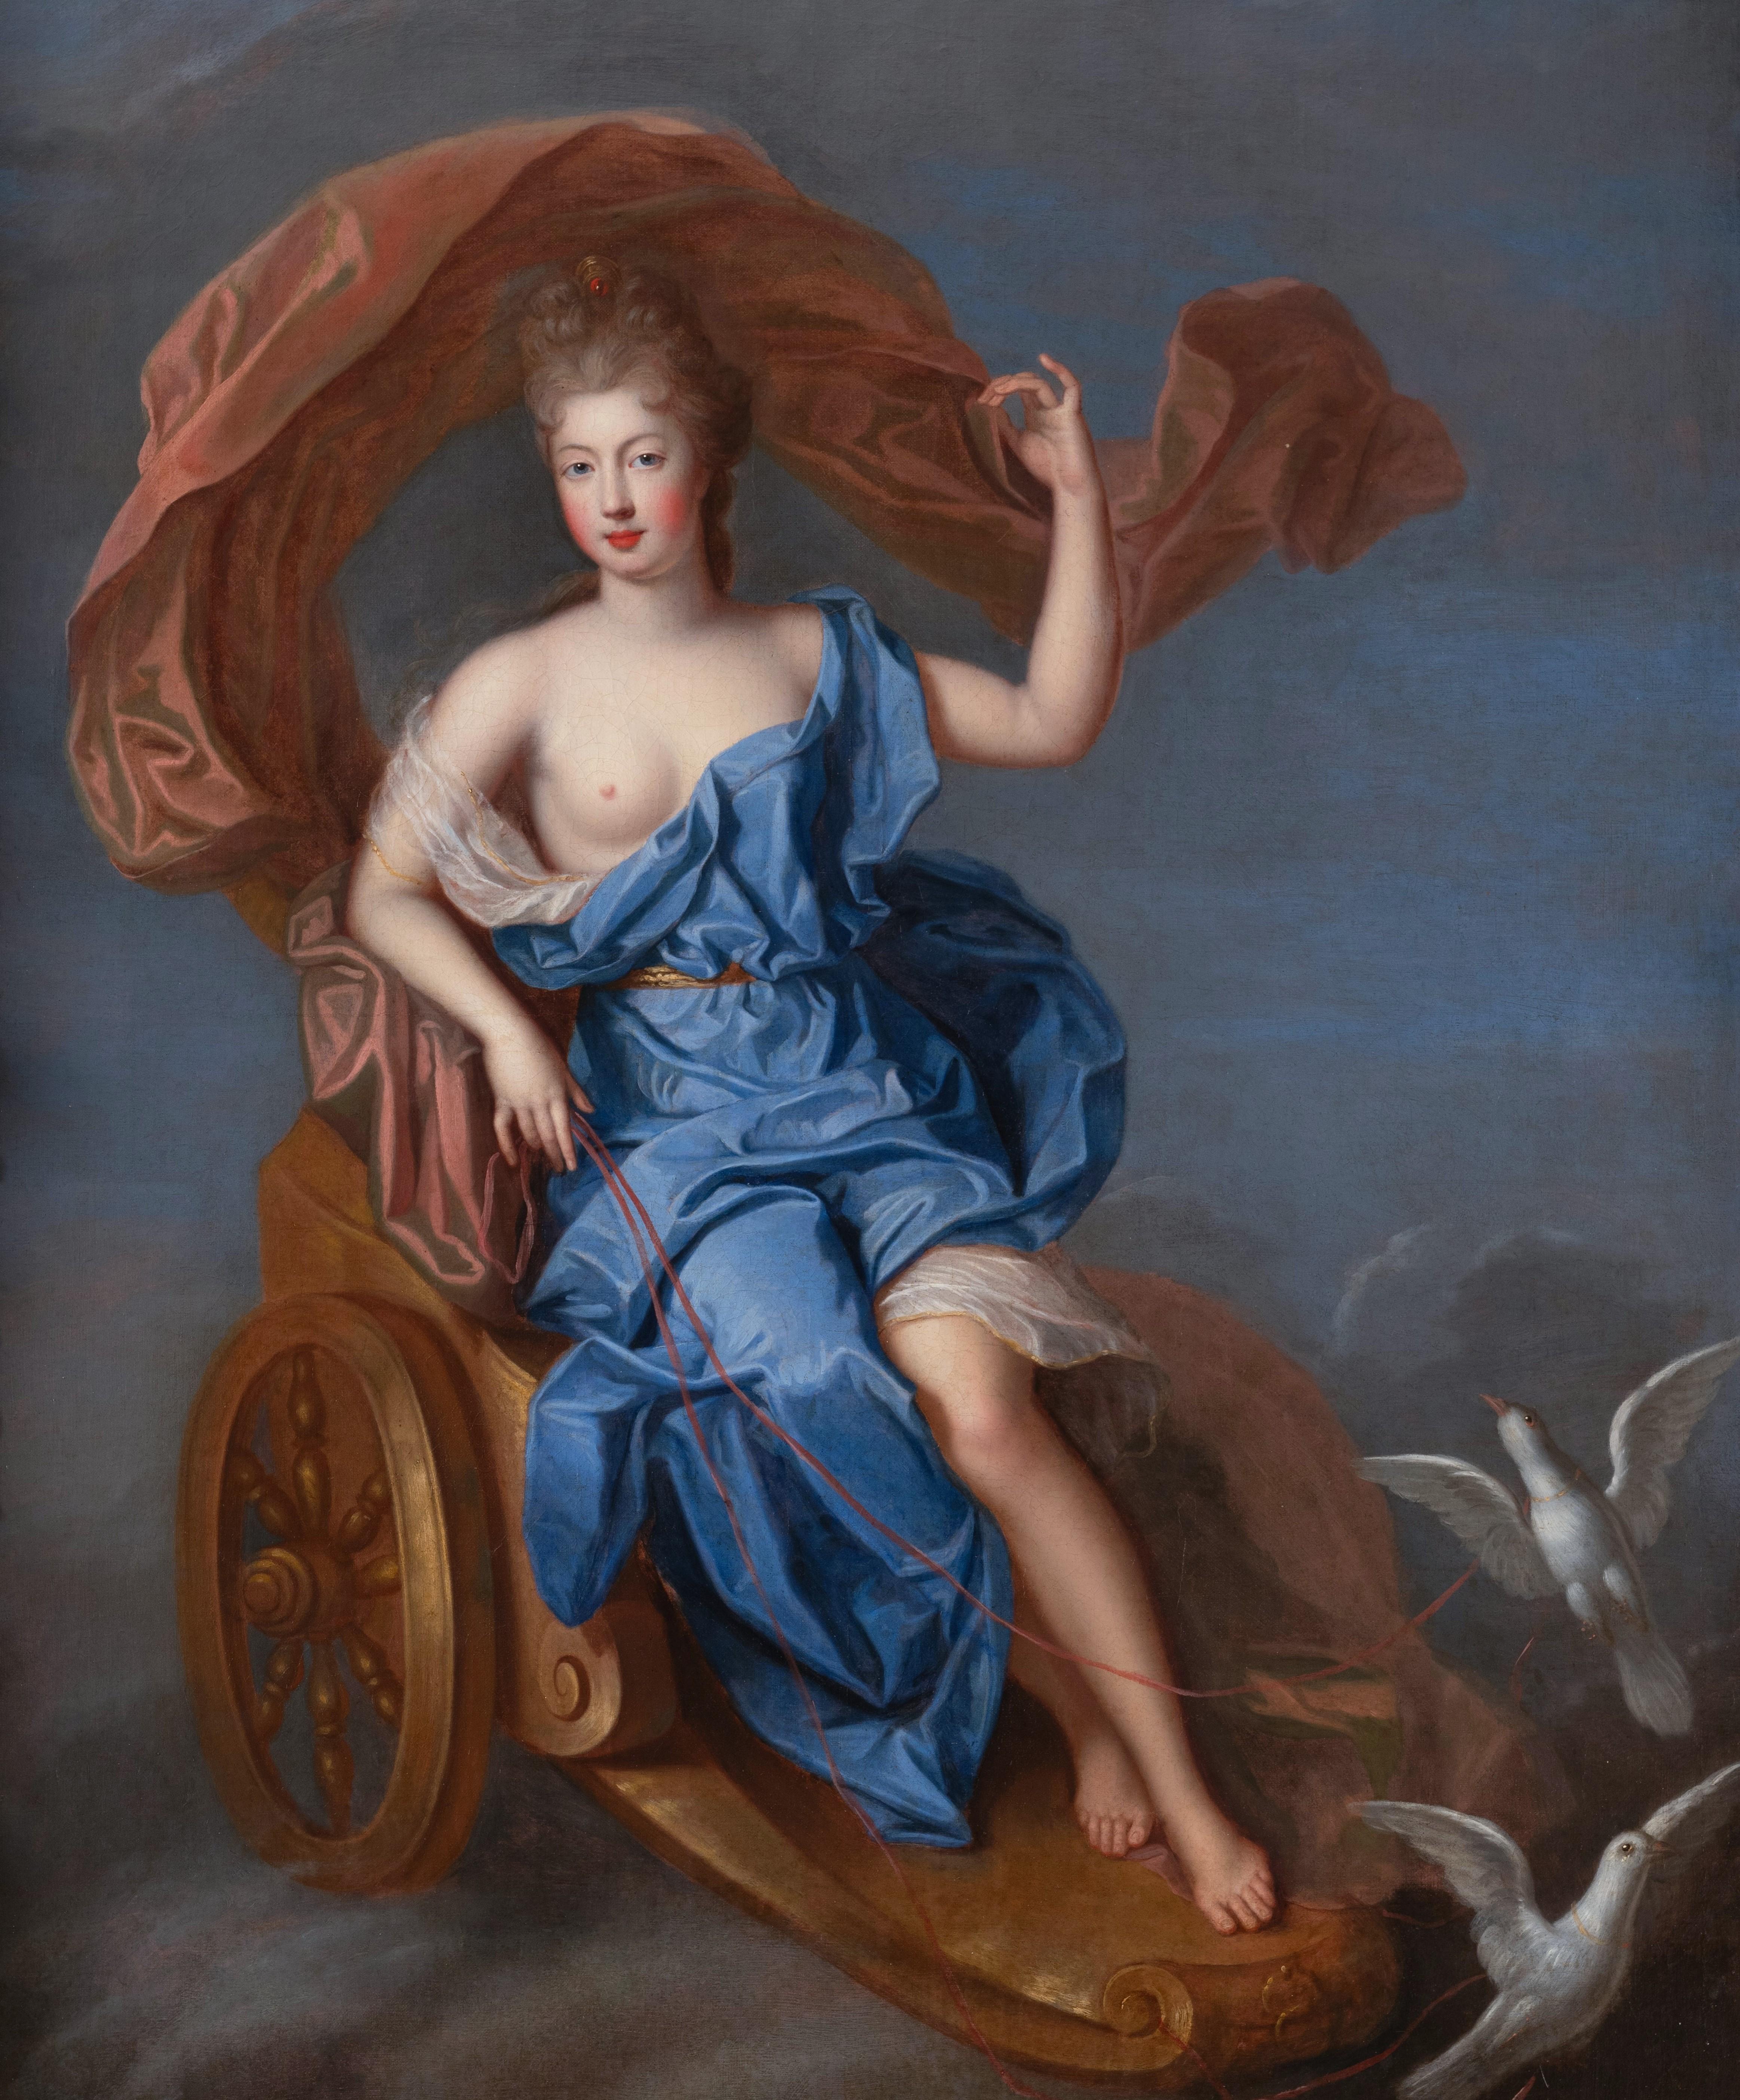 Porträt einer französischen Prinzessin aus dem späten 17. Jahrhundert, Tochter von Louis XIV. – Painting von Pierre Gobert